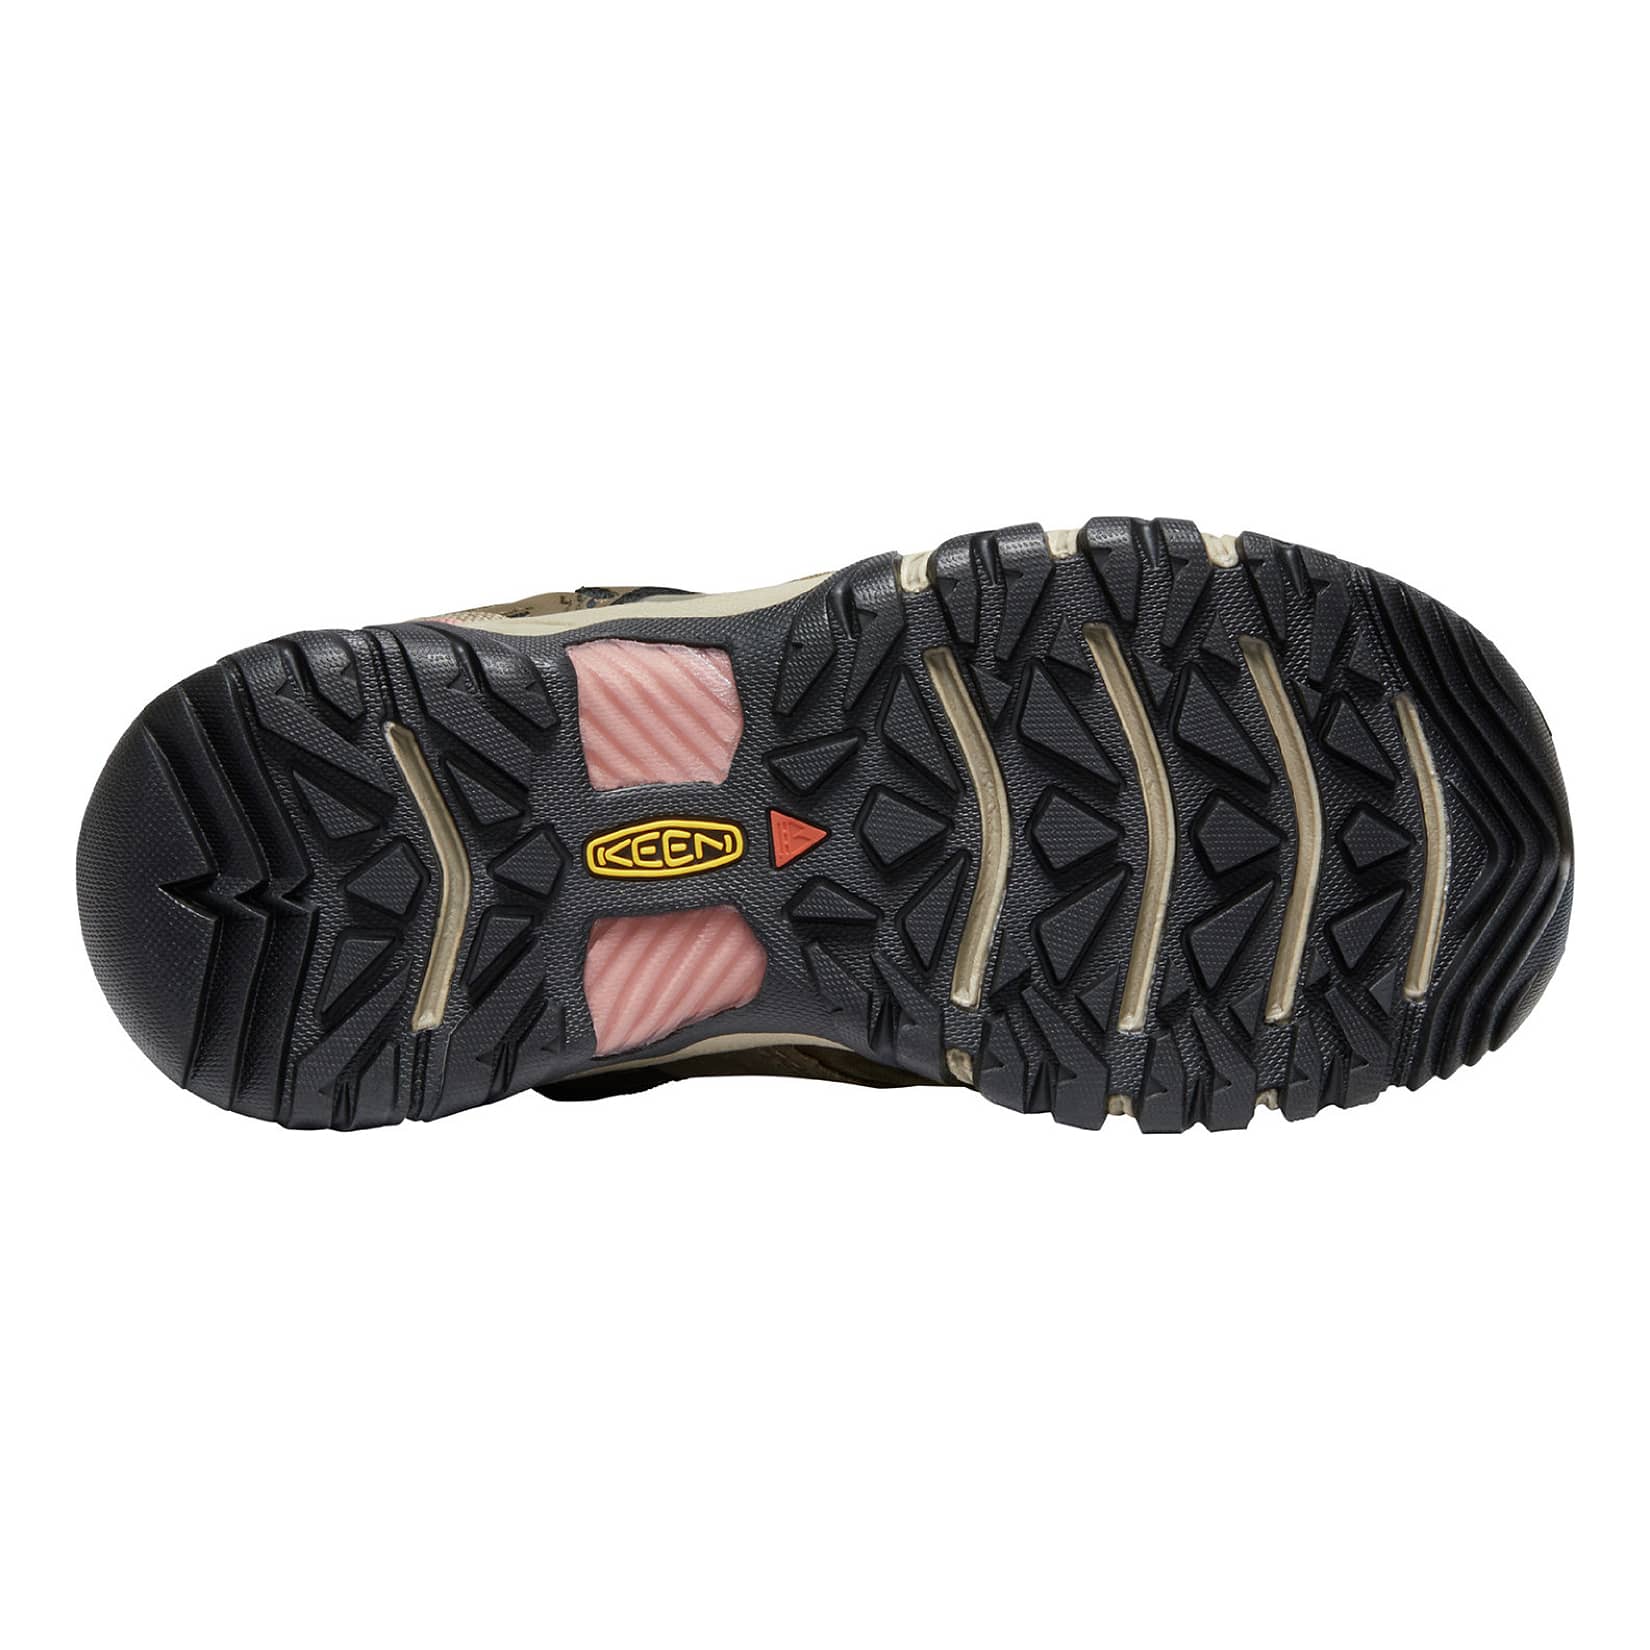 KEEN® Women’s Ridge Flex Waterproof Low Hiker - sole